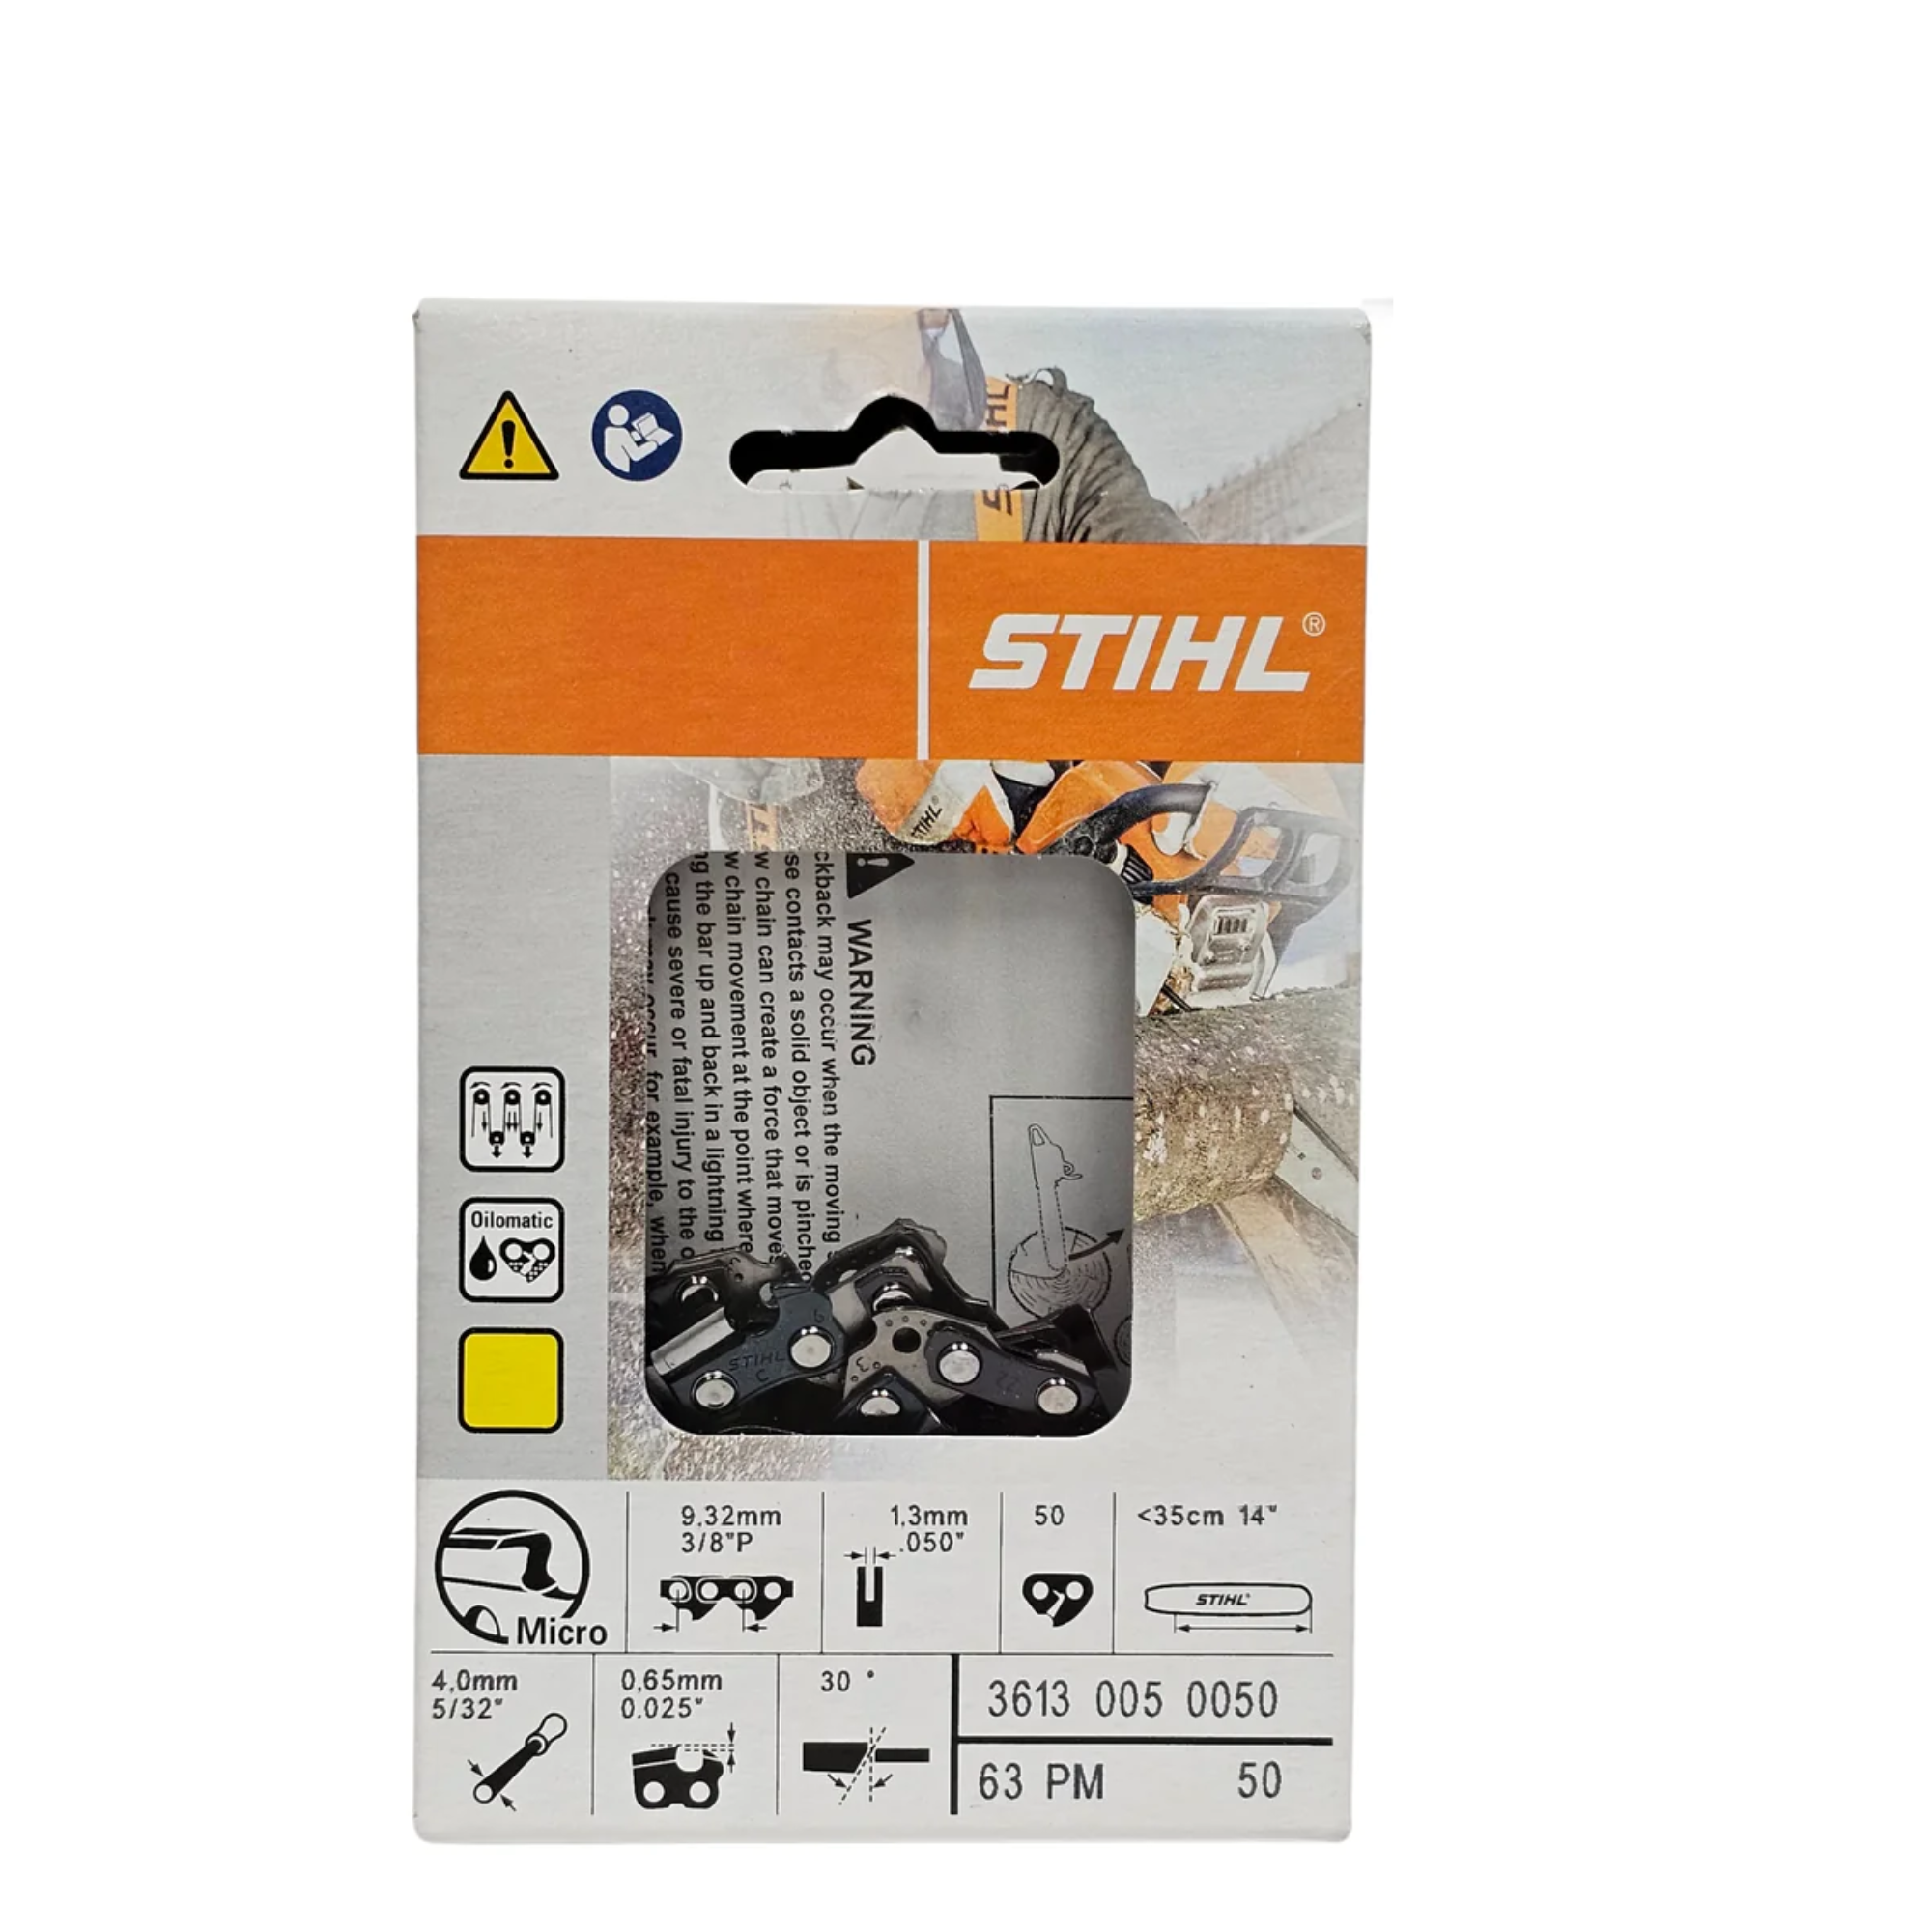 STIHL Oilomatic Picco Micro | 63 PM 50 | 14 in. | 50 Drive Links | Chainsaw Chain | 3613 005 0050